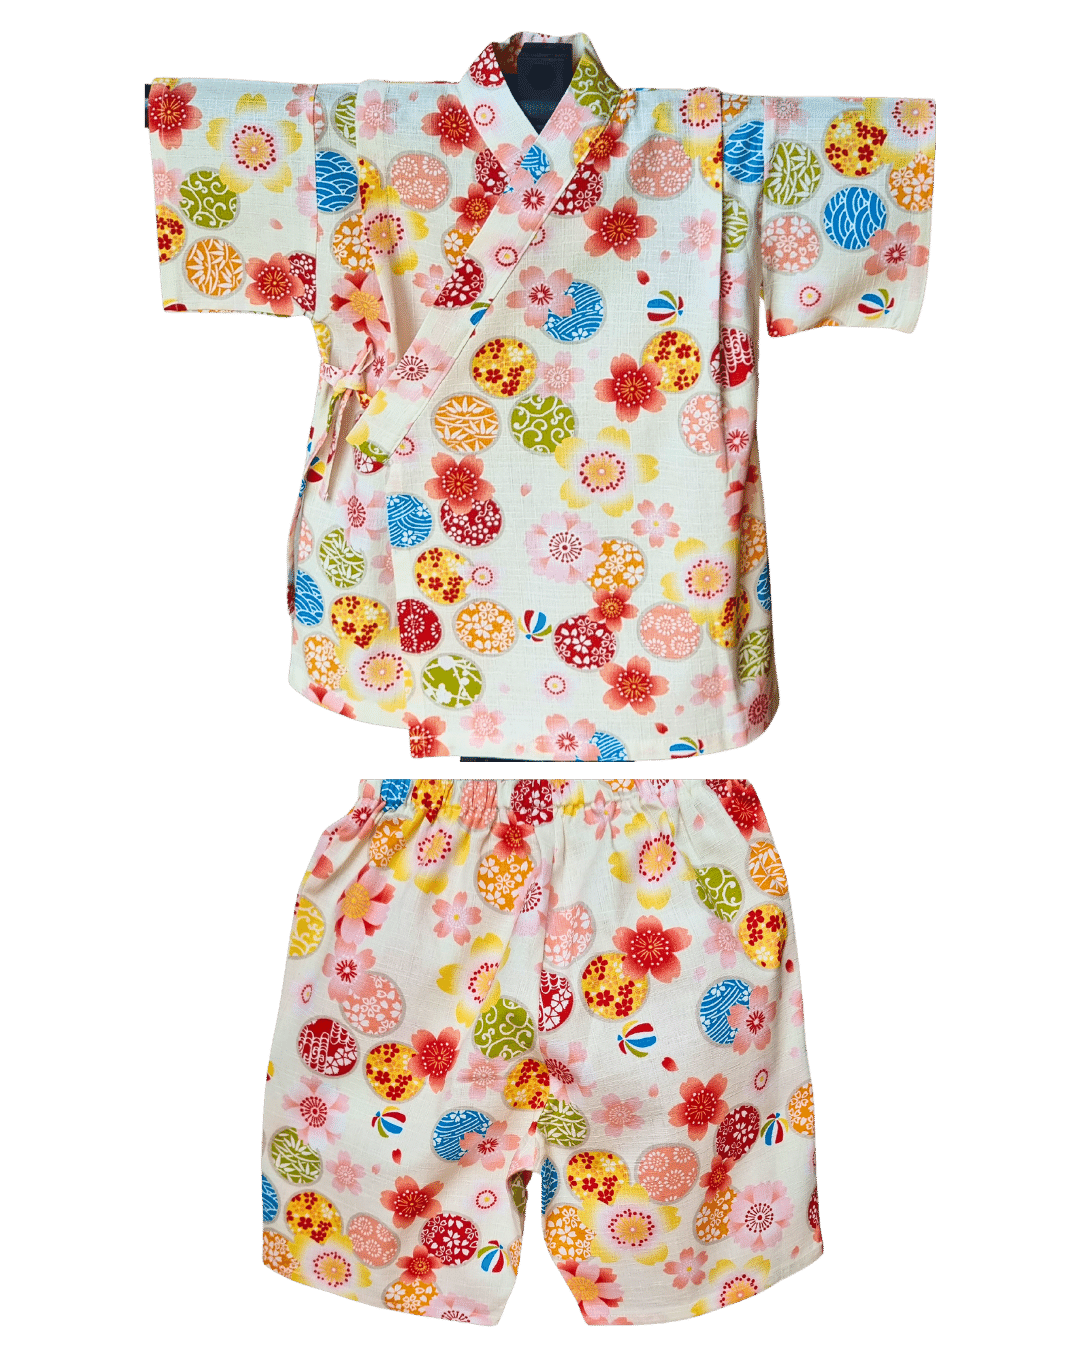 Jinbei Kinder japanische Muster 98